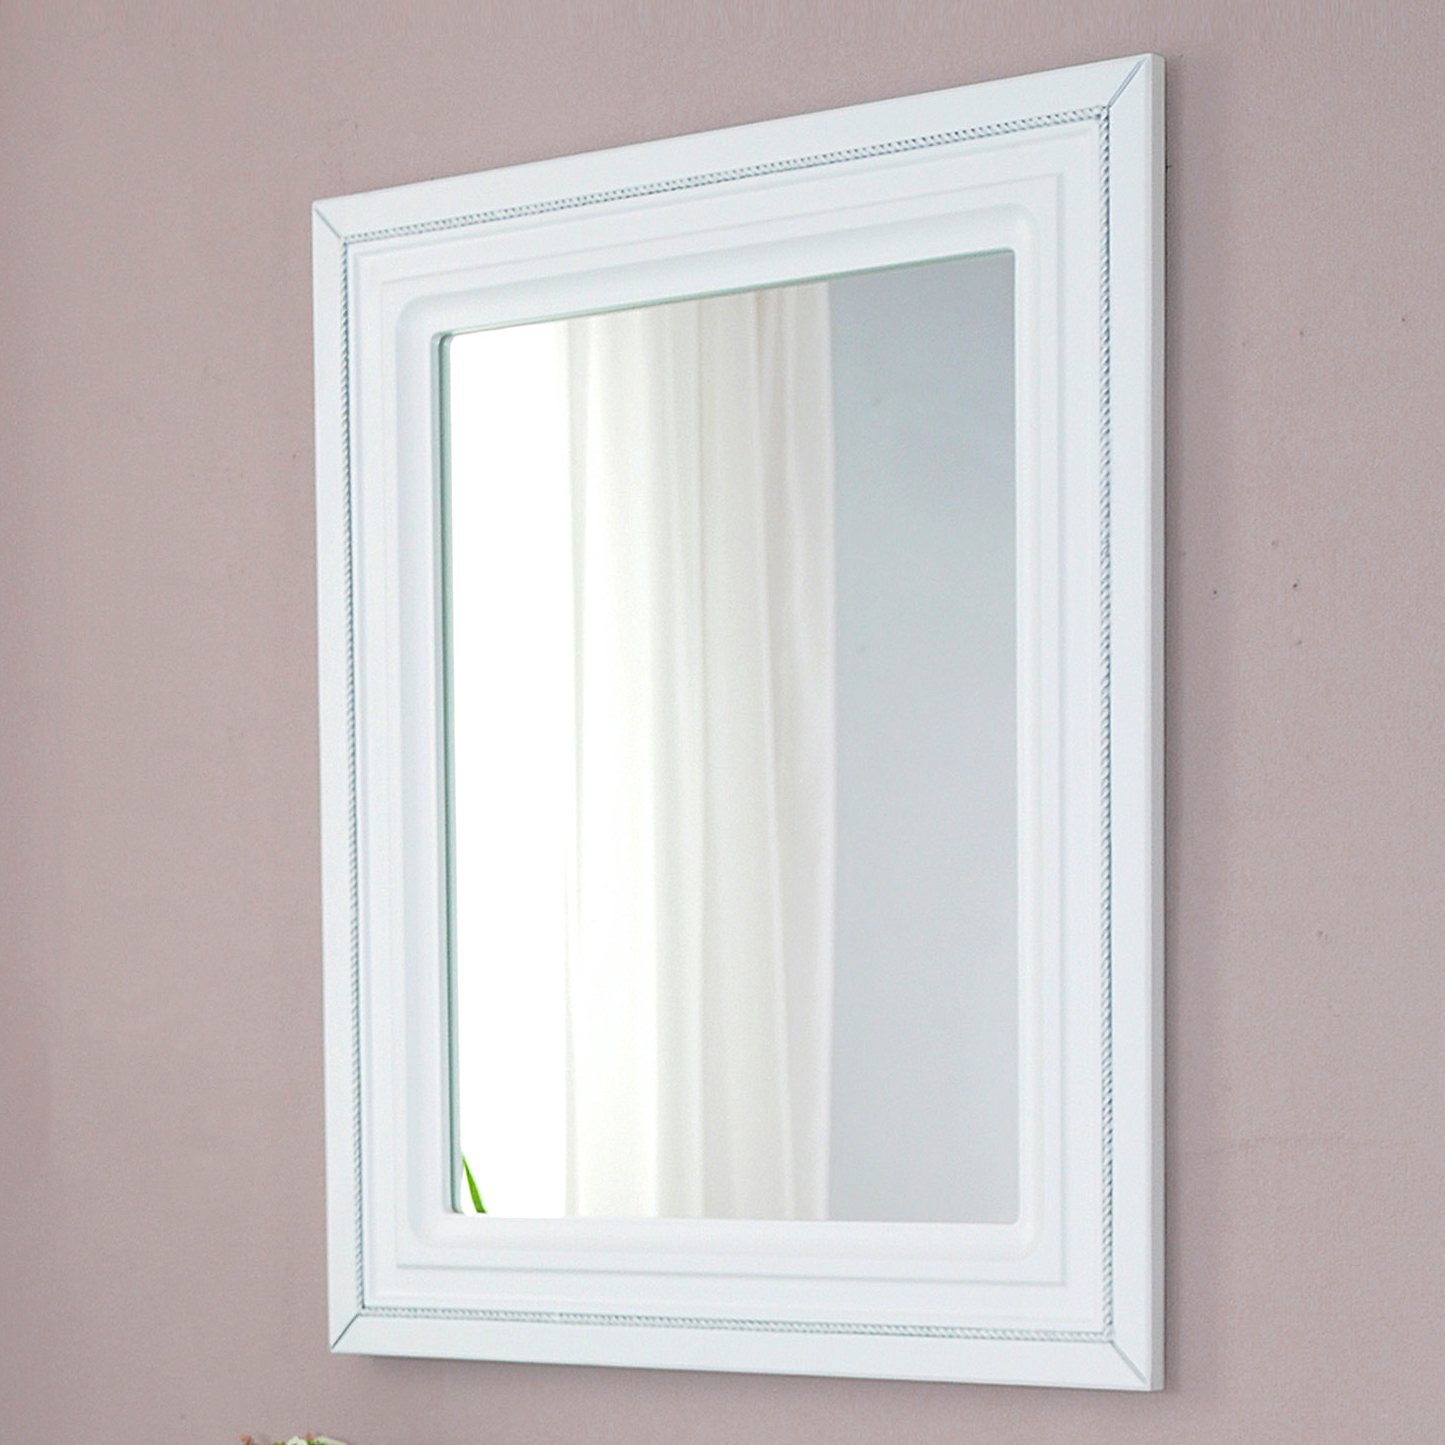 Зеркало Атолл Валери 160 белый глянец, патина серебро